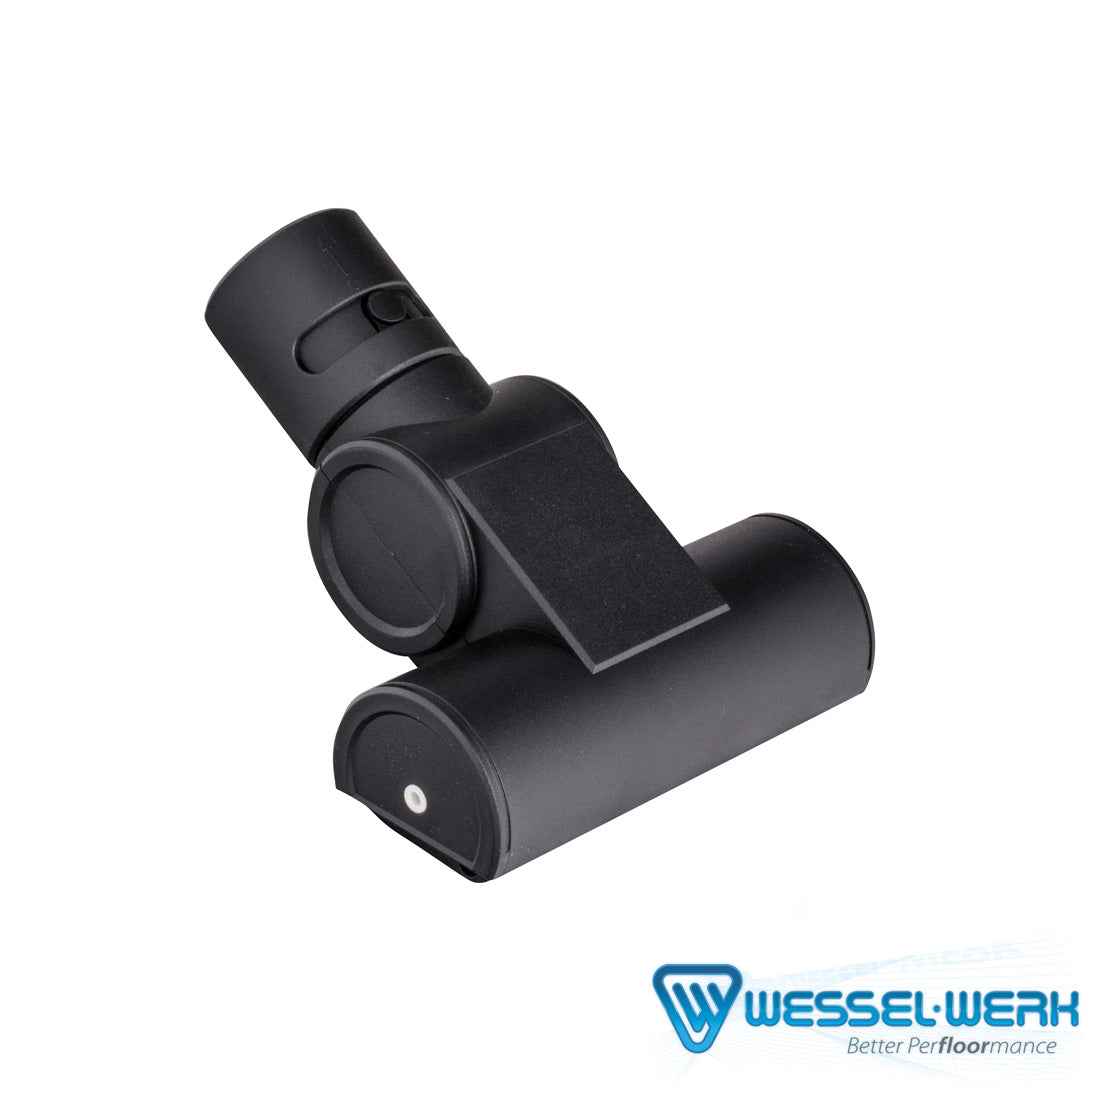 Wessel Werk Mini Air Hand Held Powerbrush - Black - PW019B